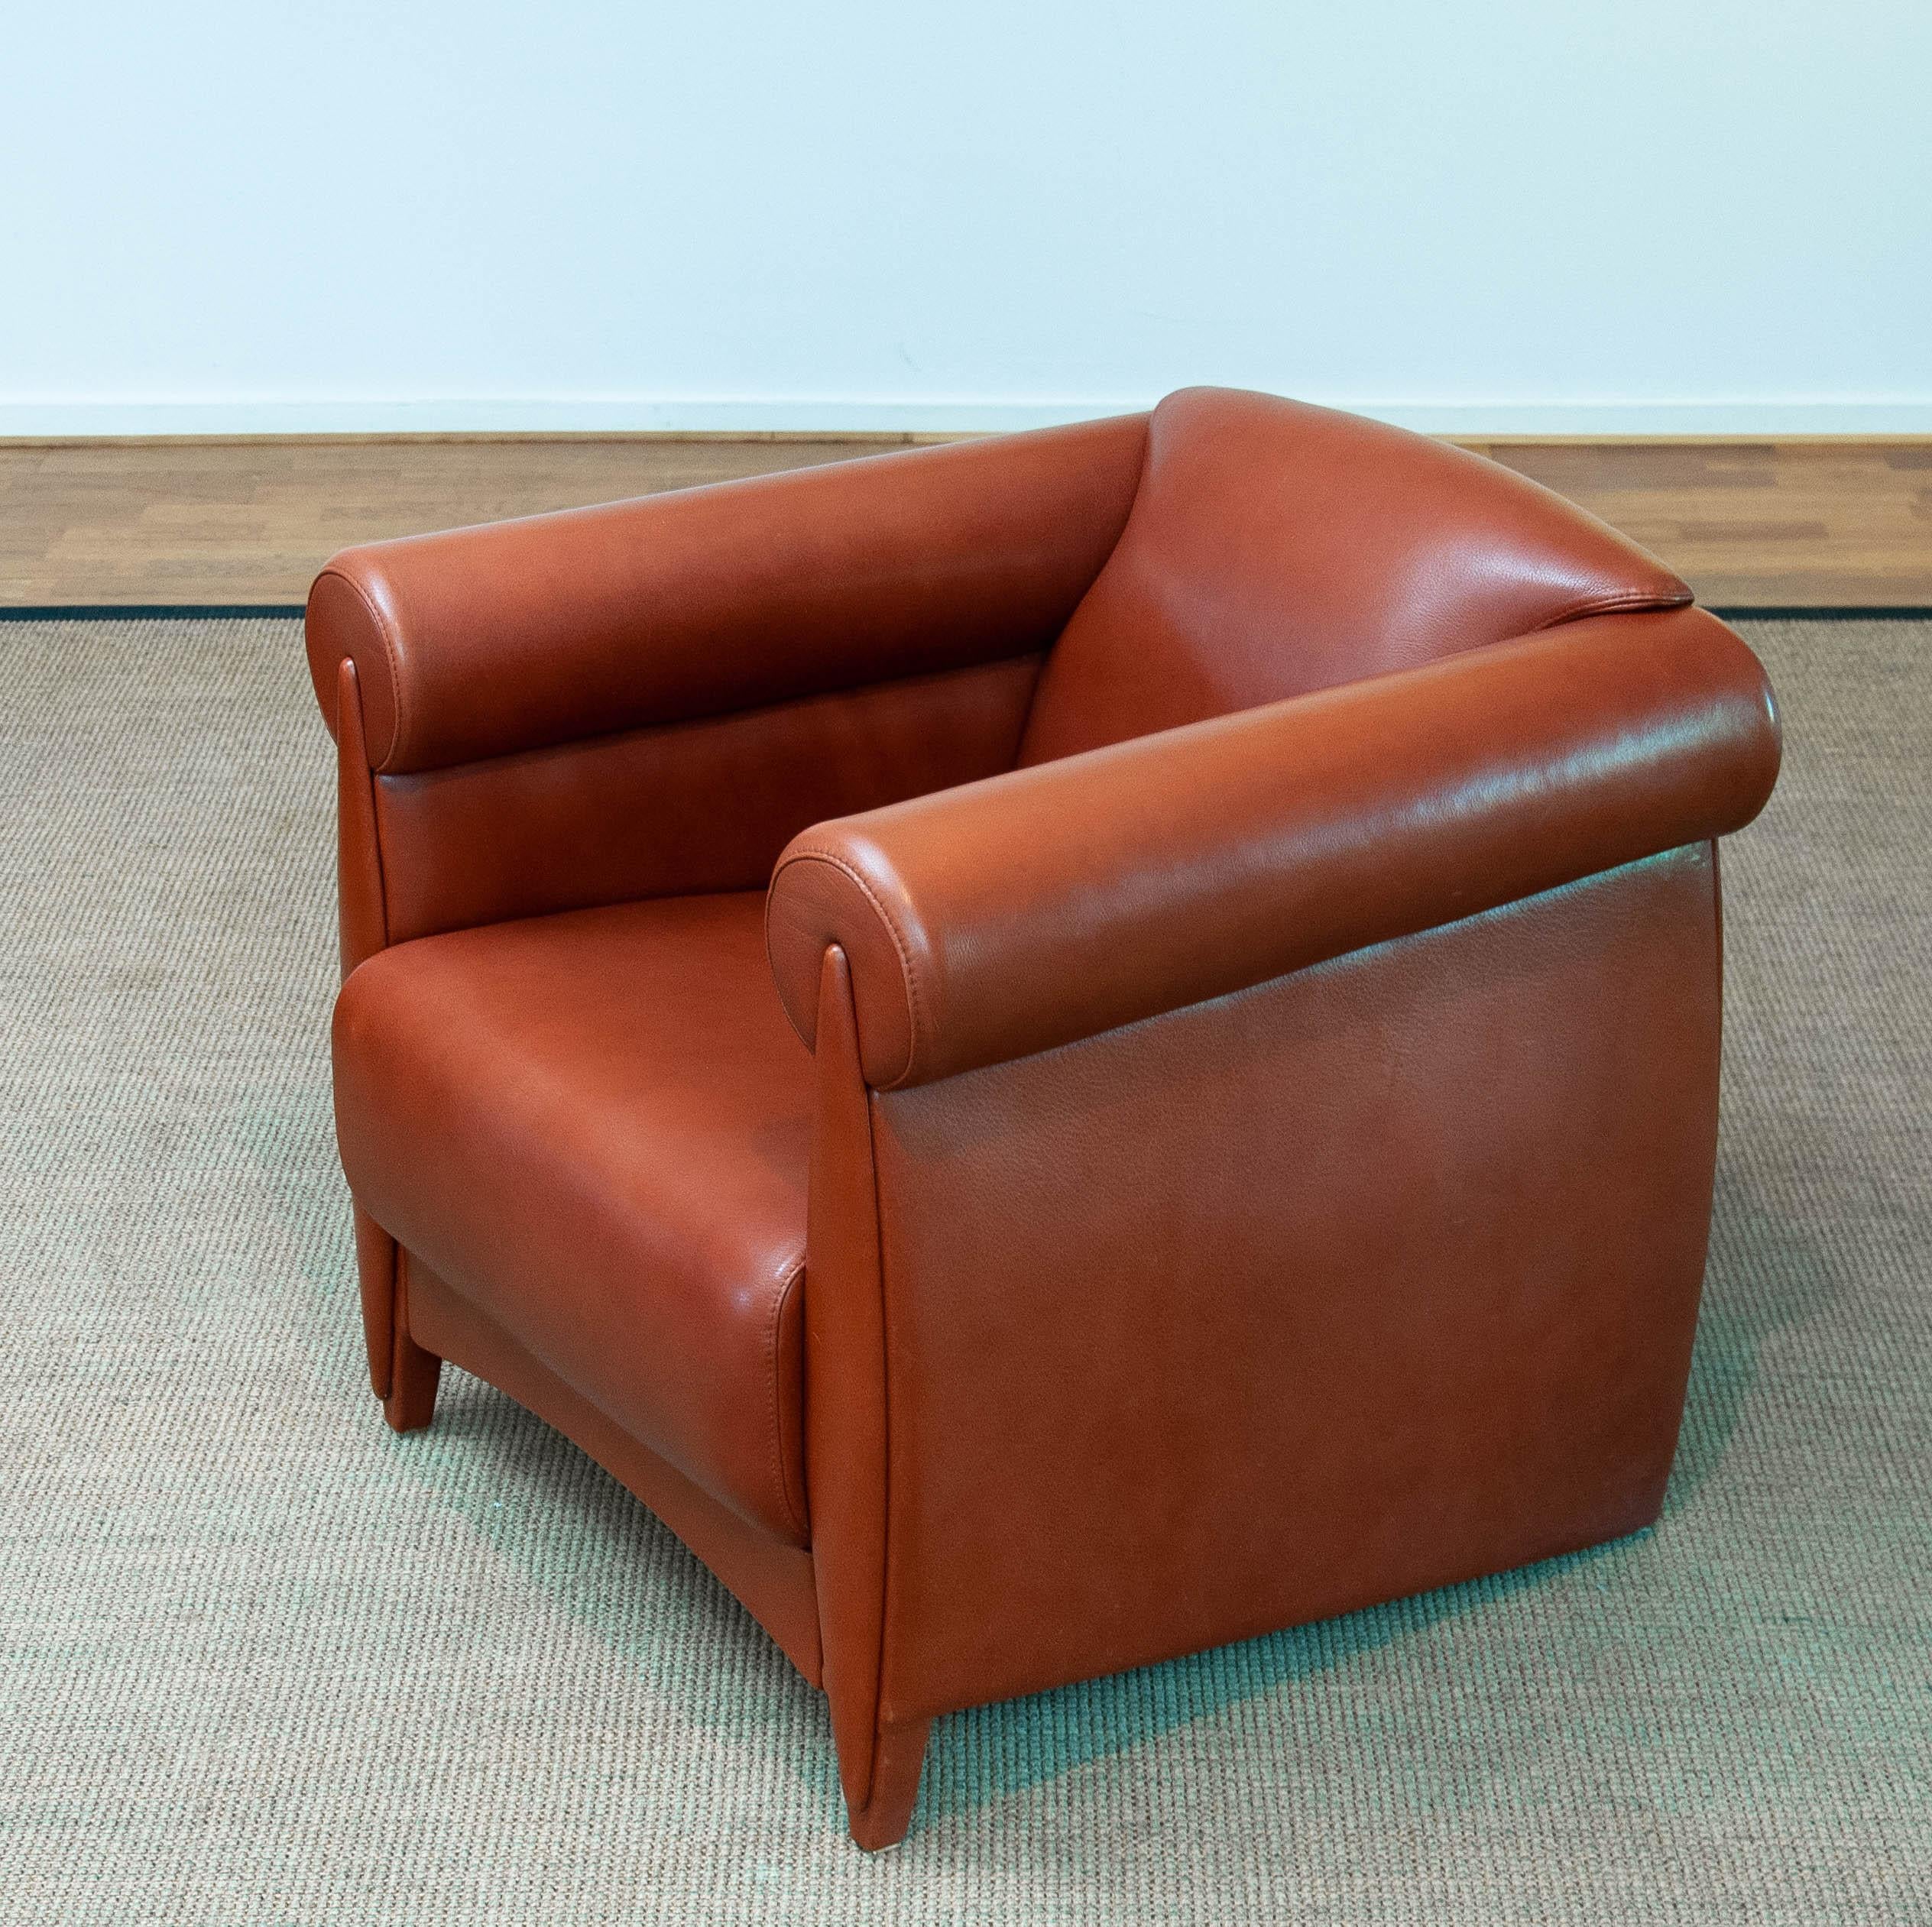 Sehr exklusive und seltene Loungesessel / Clubsessel des dänischen Designers Klaus Wettergren in limitierter Stückzahl und nur auf besonderen Wunsch durch selektive Bestellungen gebaut.
Dieser Stuhl wird in einem sehr hohen Standard gebaut und nur